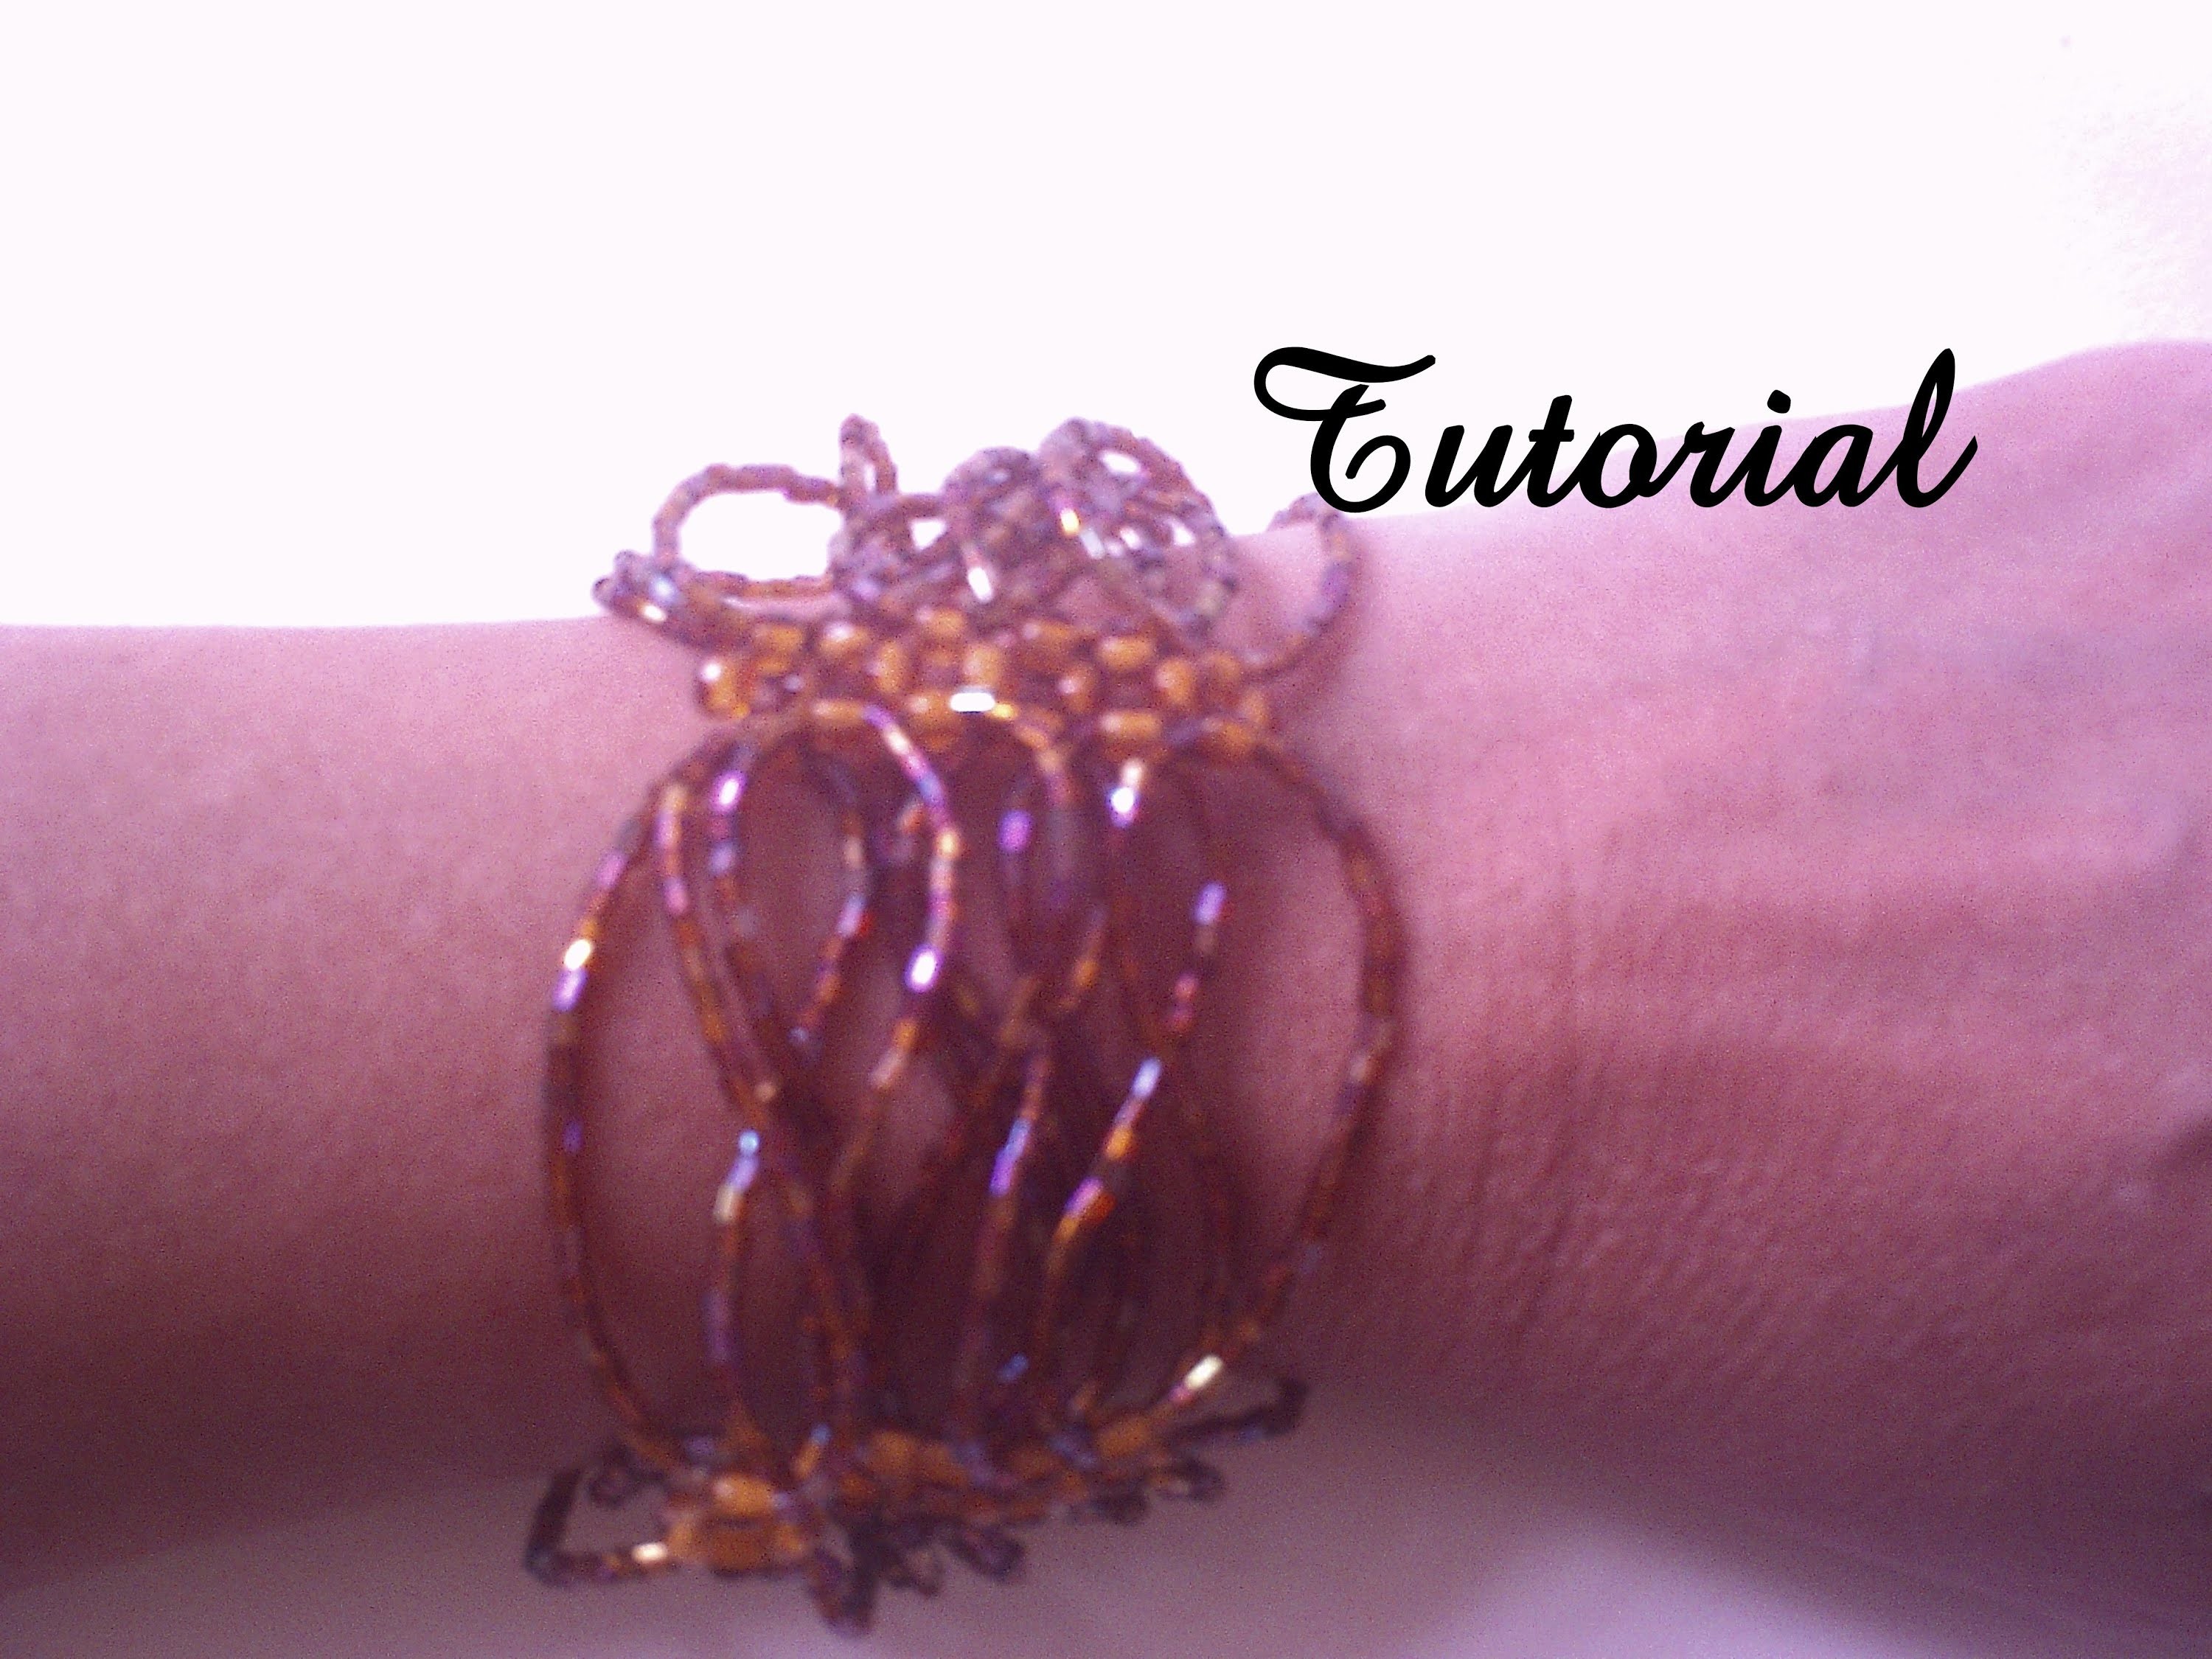 Bracelete com vidrilhos.Tutorial com esquema. Bracelet with glass beads. Tutorial with scheme